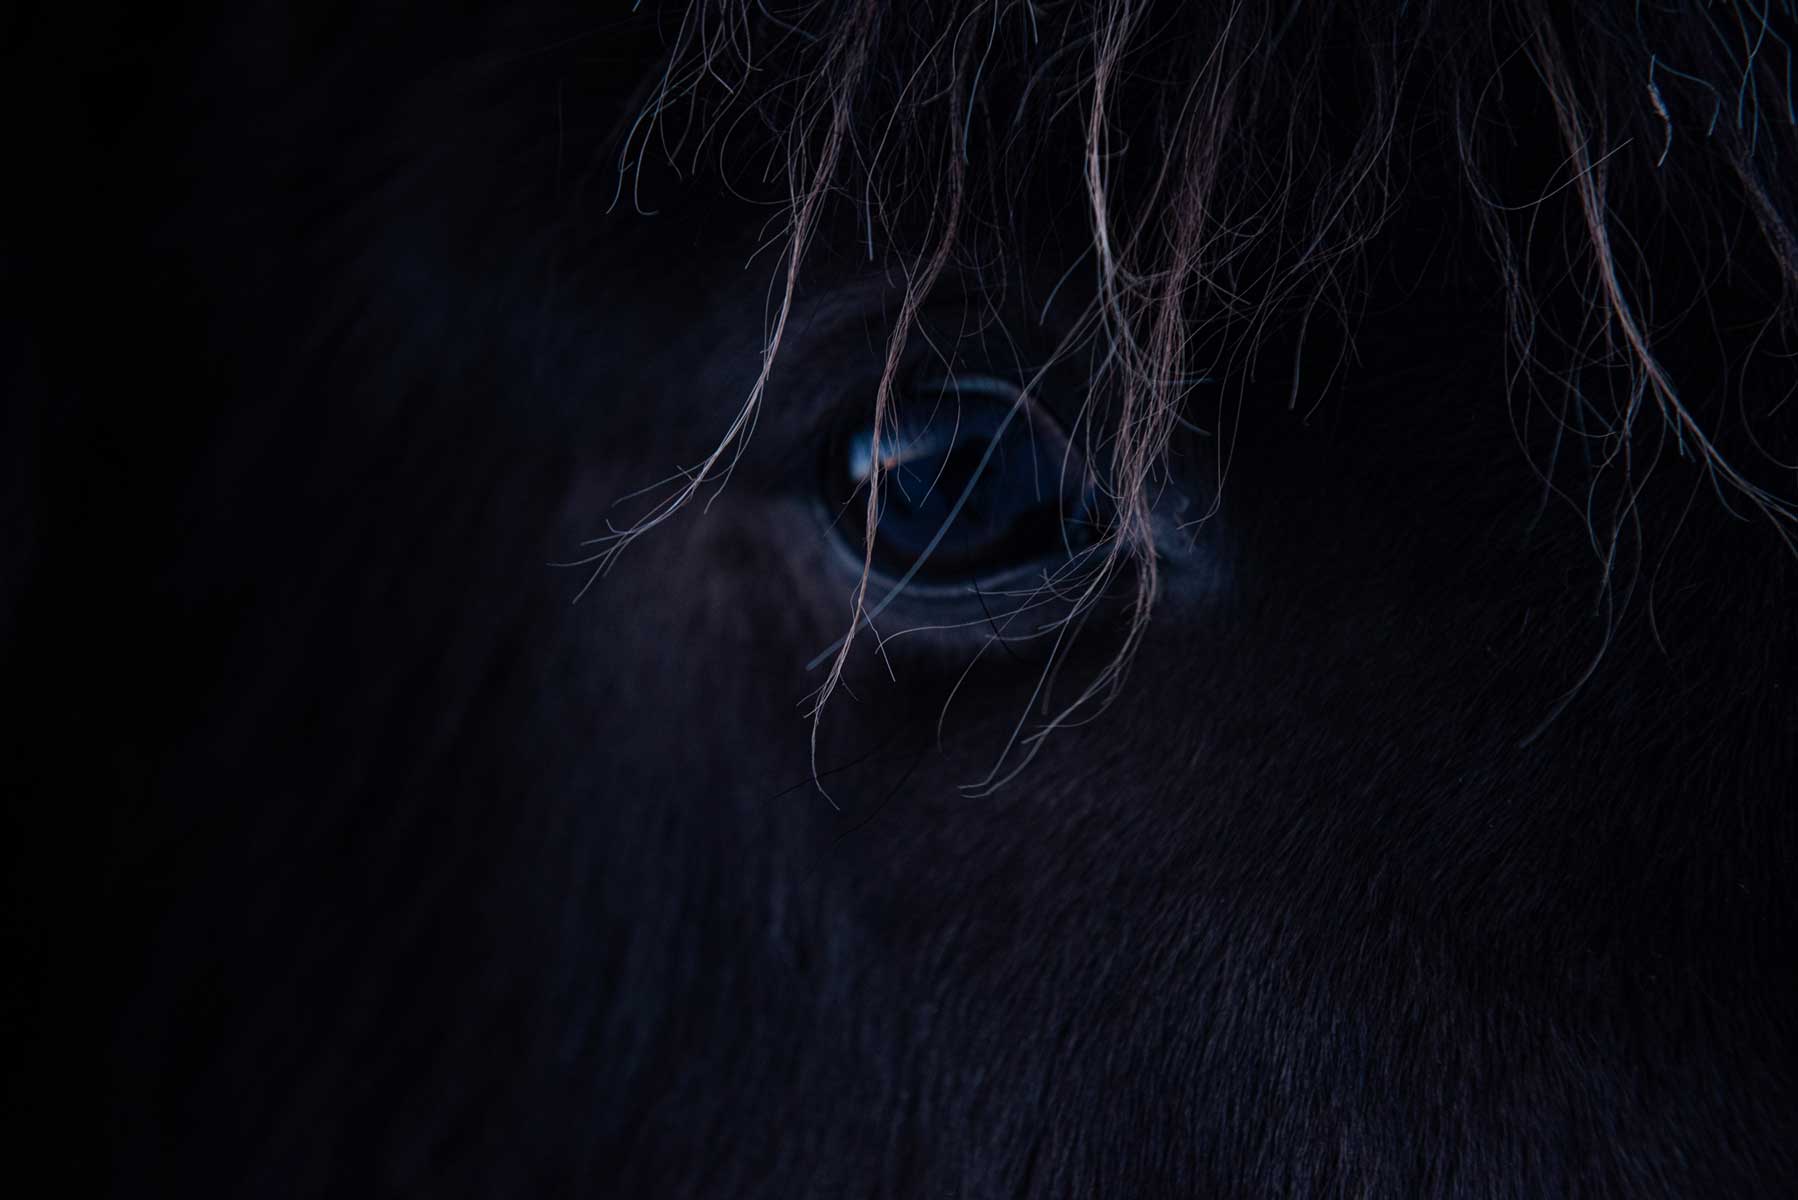 43_dettaglio-occhio-cavallo